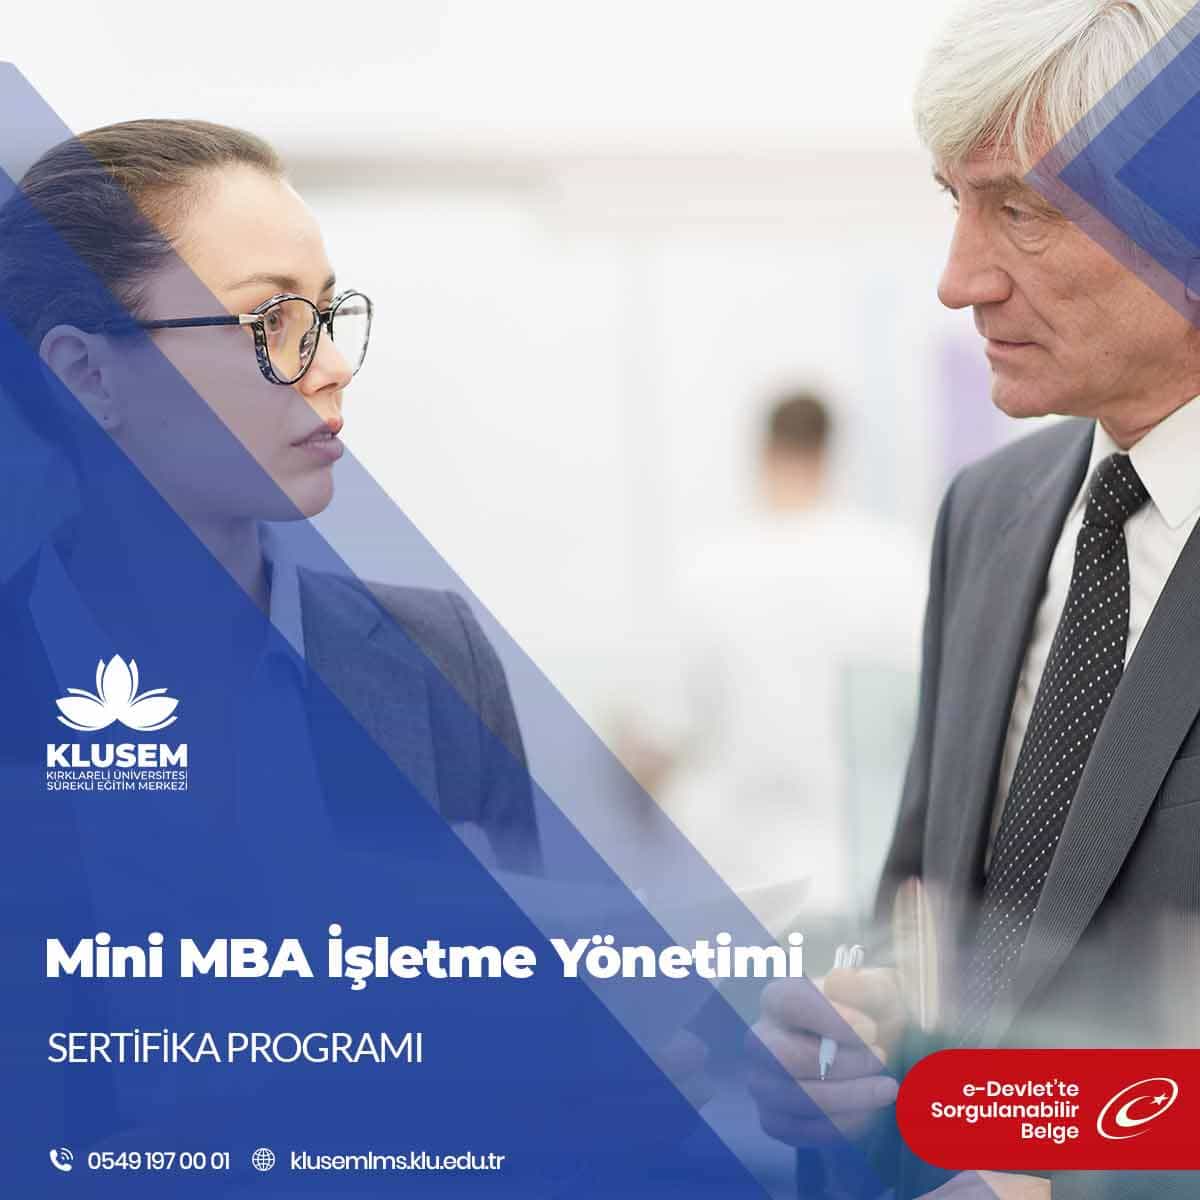 Mini MBA İşletme Yönetimi Sertifikalı Eğitim Programı mesleki gelişimi destekleyici, işletmelere ve kişileri destekleyici olması için hazırlanmıştır.